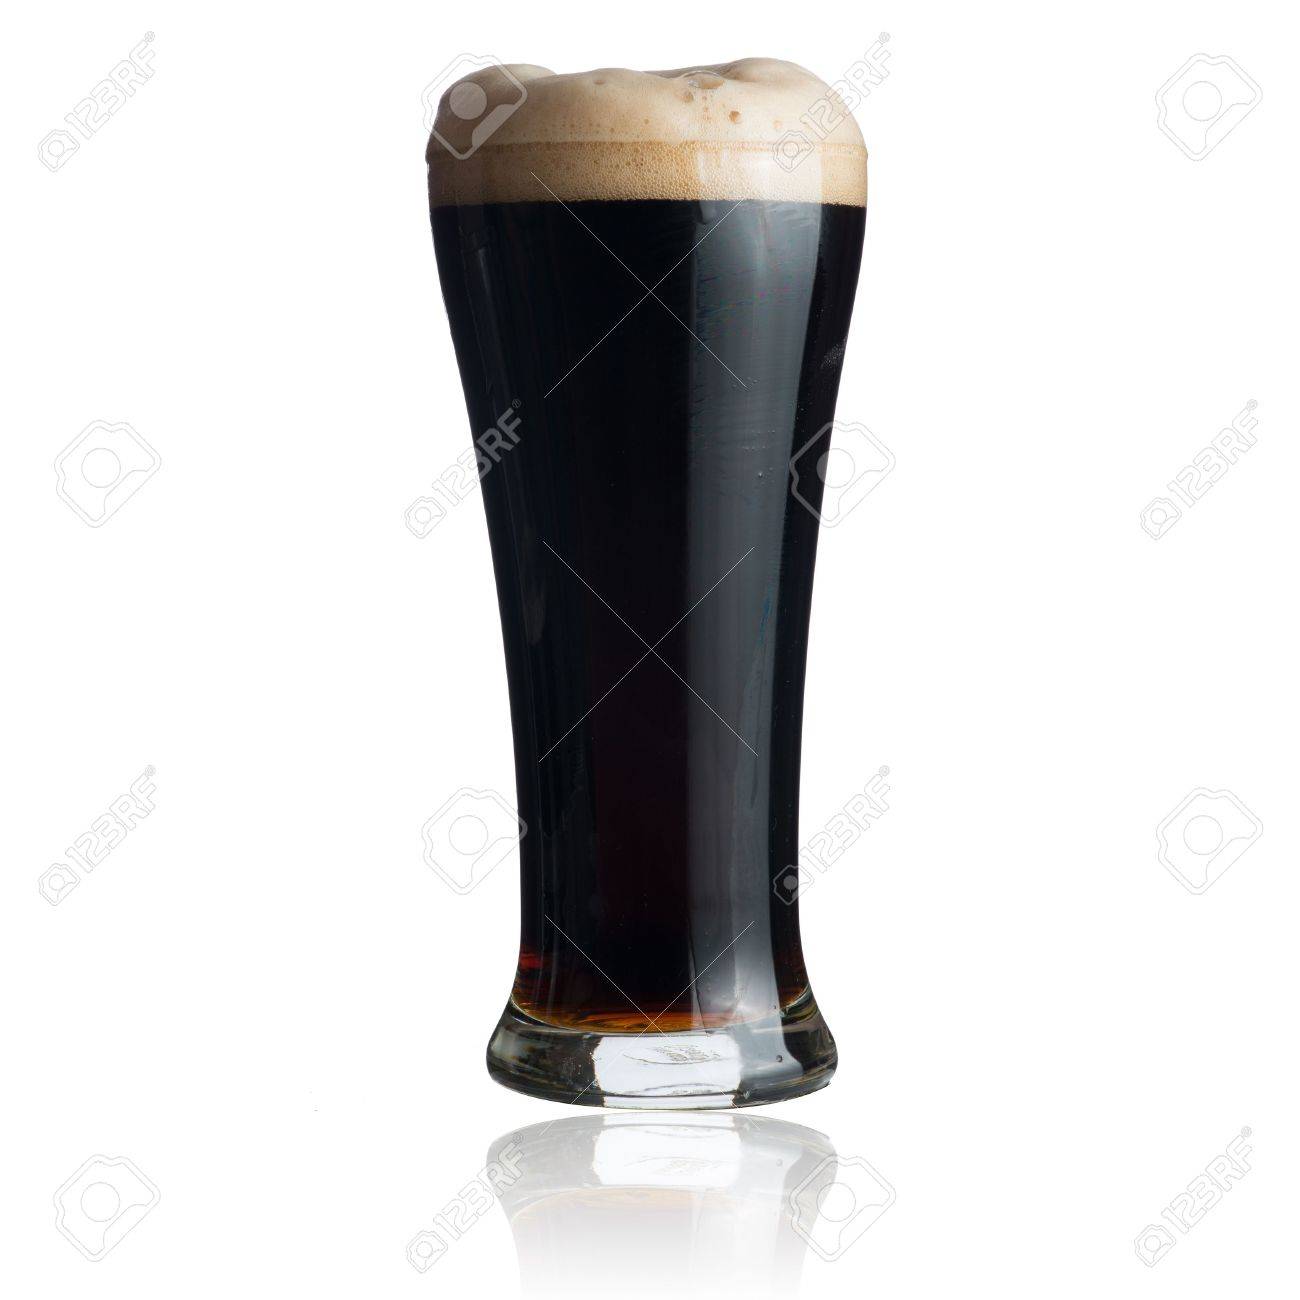 15842696-dark-beer-in-glass-isolated-on-white.jpg